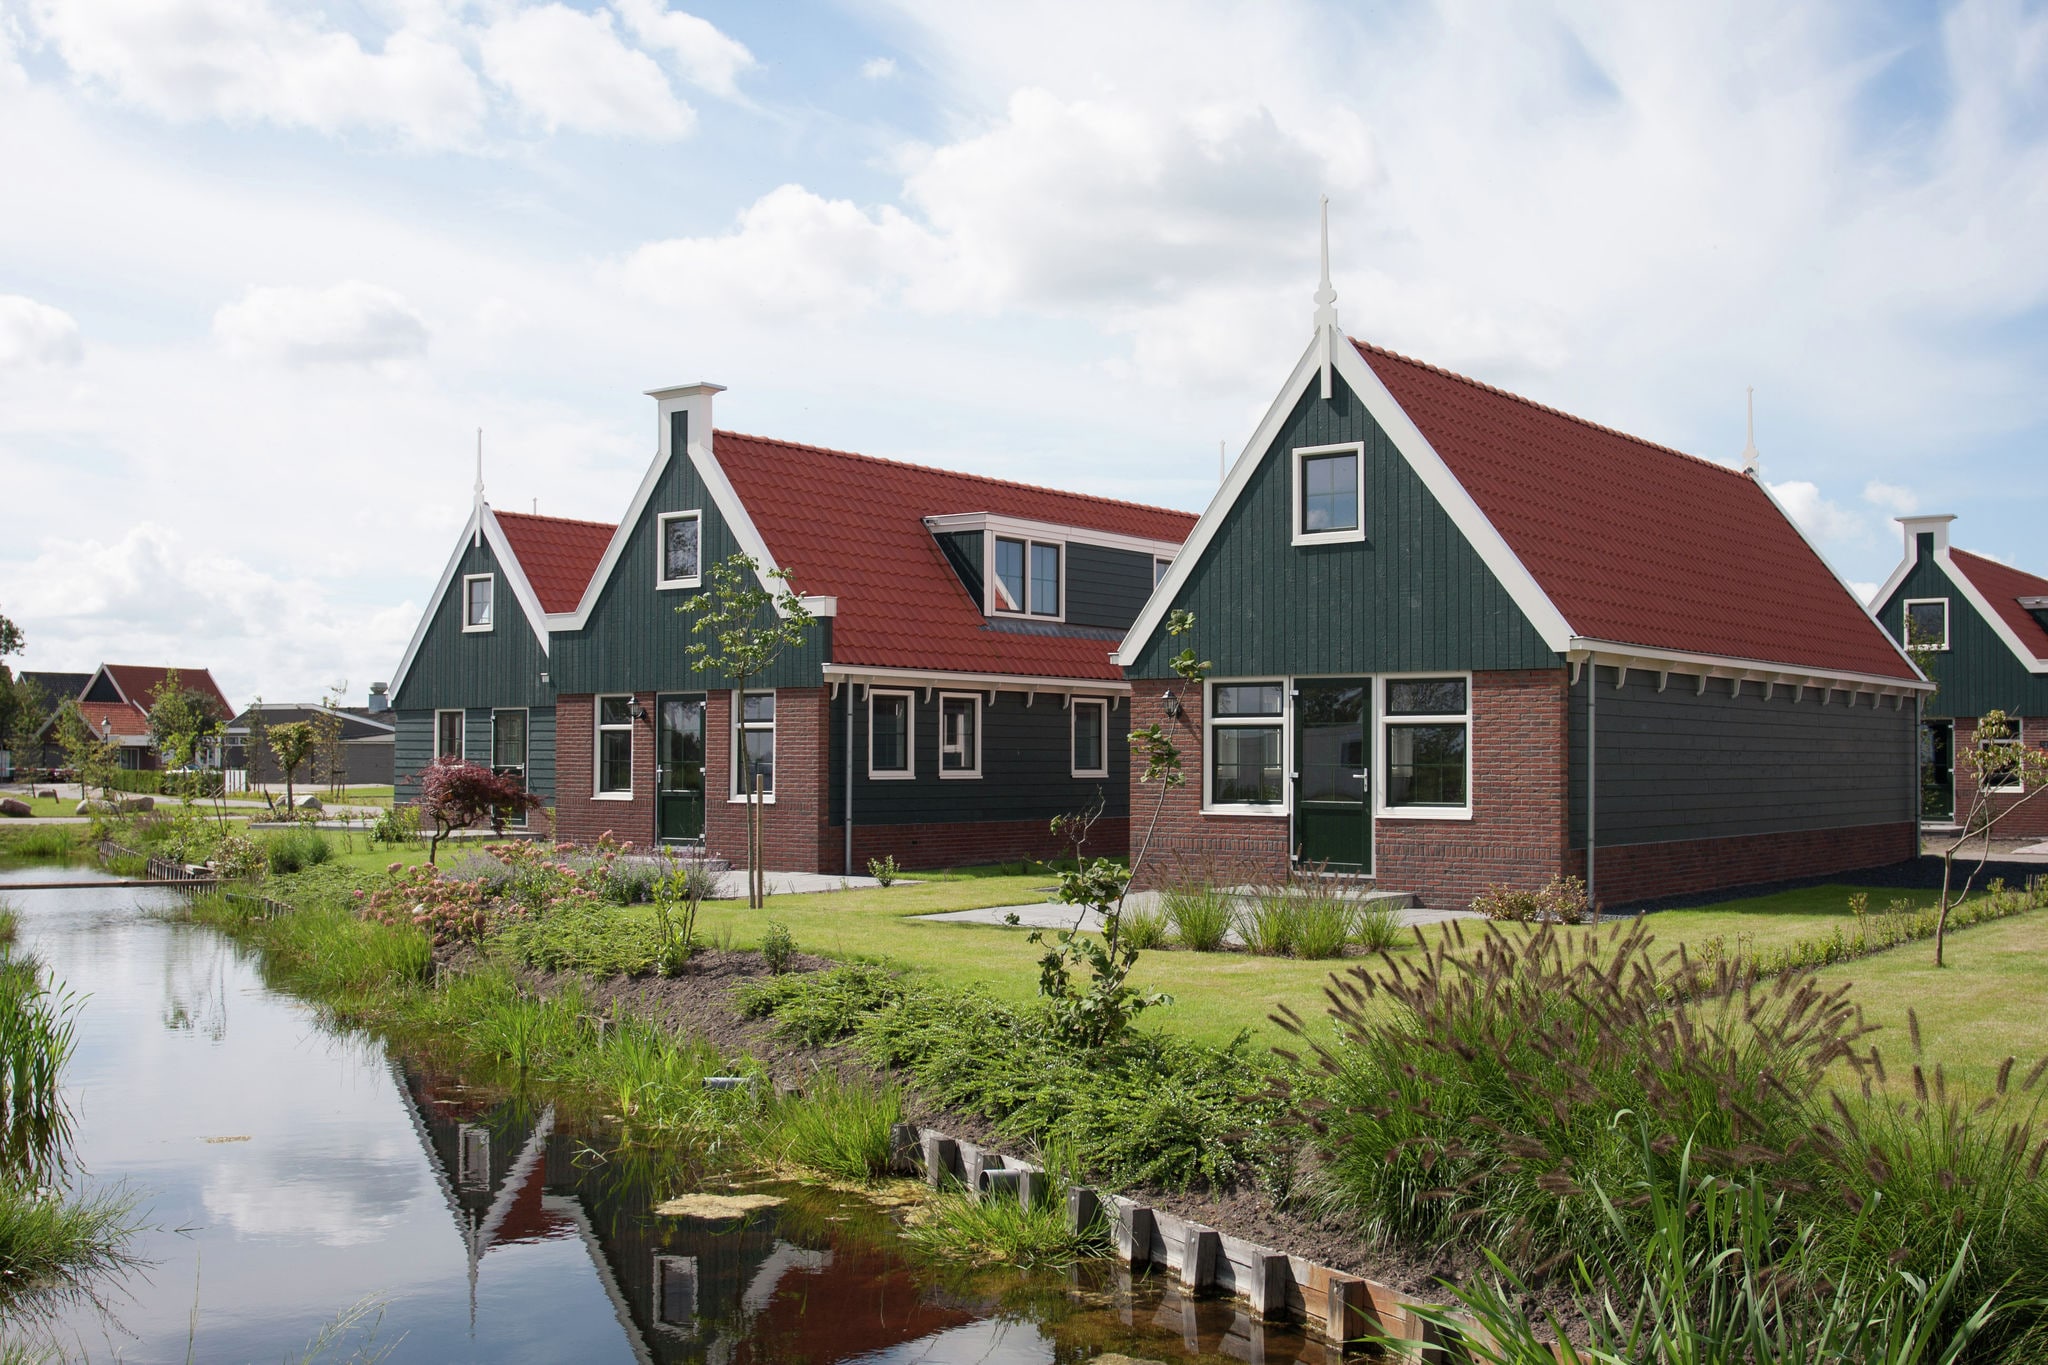 Vakantiehuis in Zaanse stijl 15 km. van Alkmaar